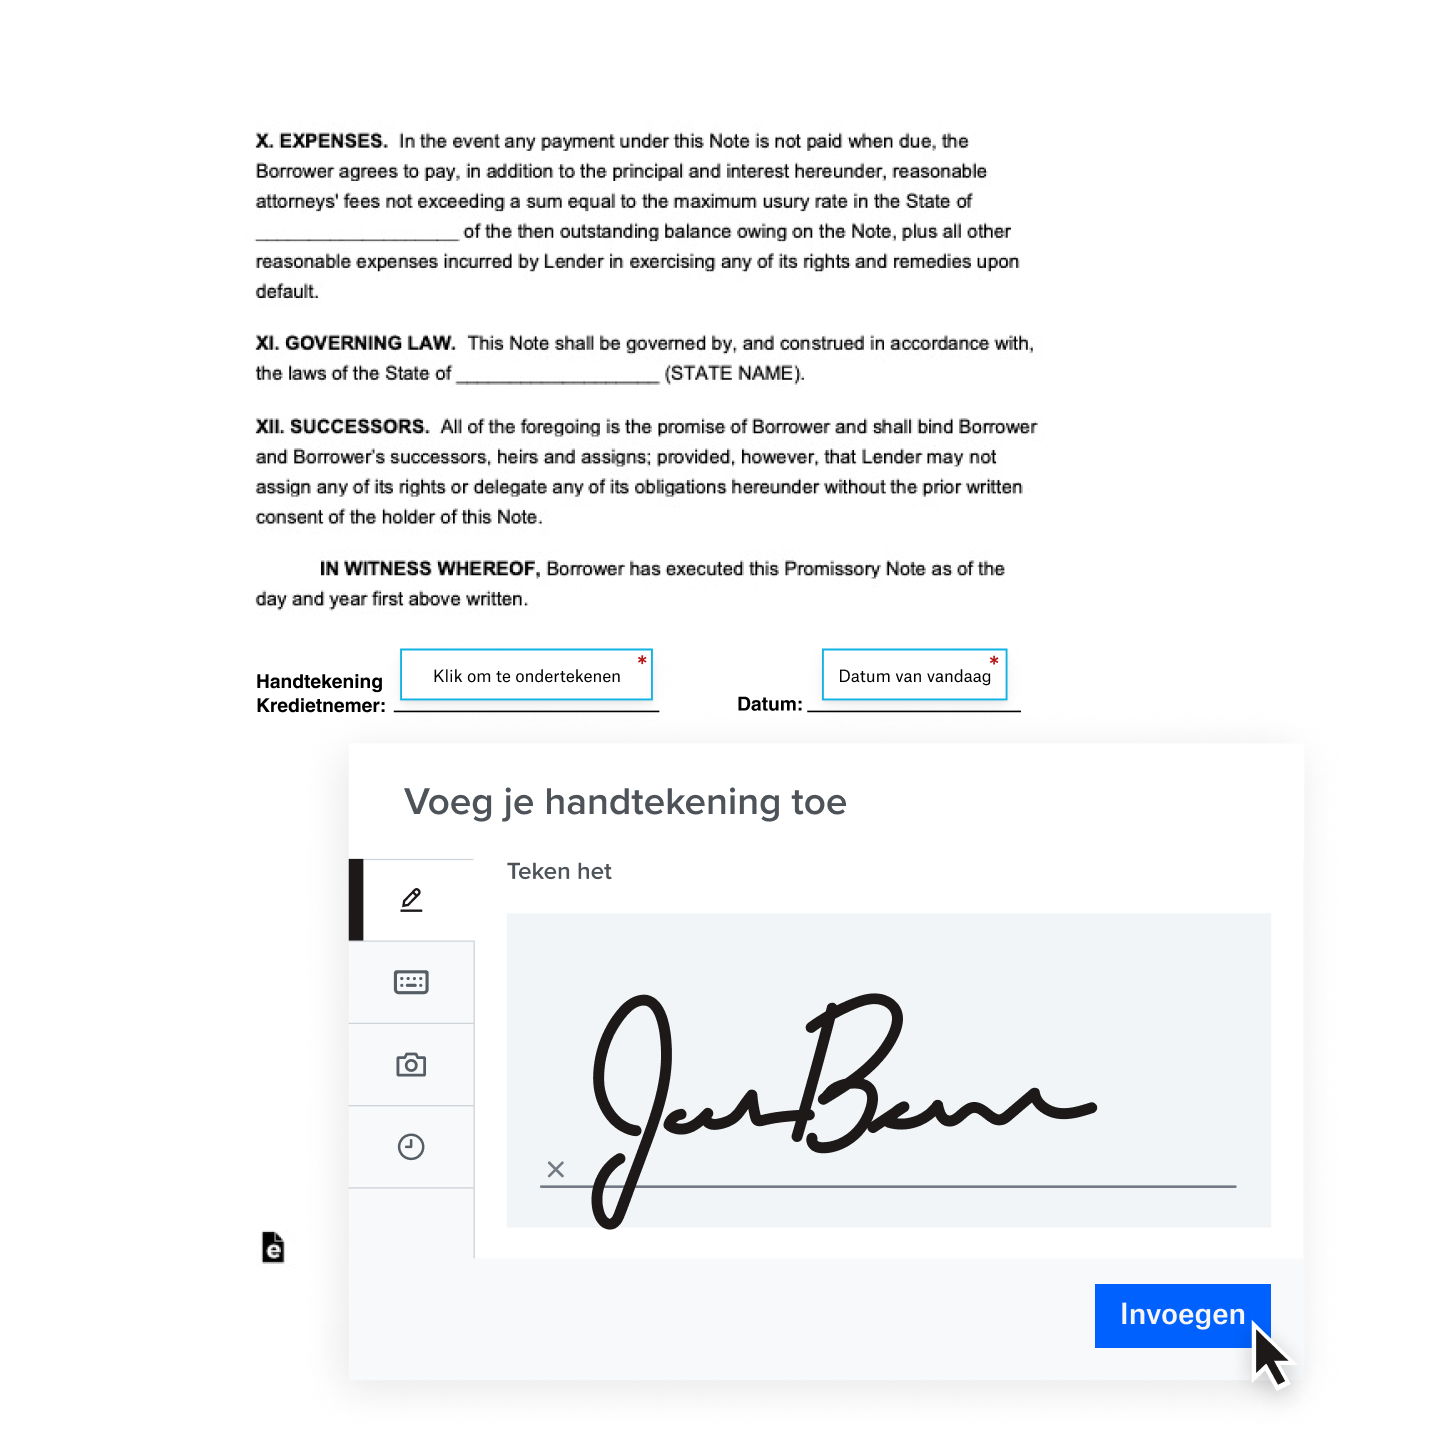 Een handgeschreven digitale handtekening die aan een contract wordt toegevoegd